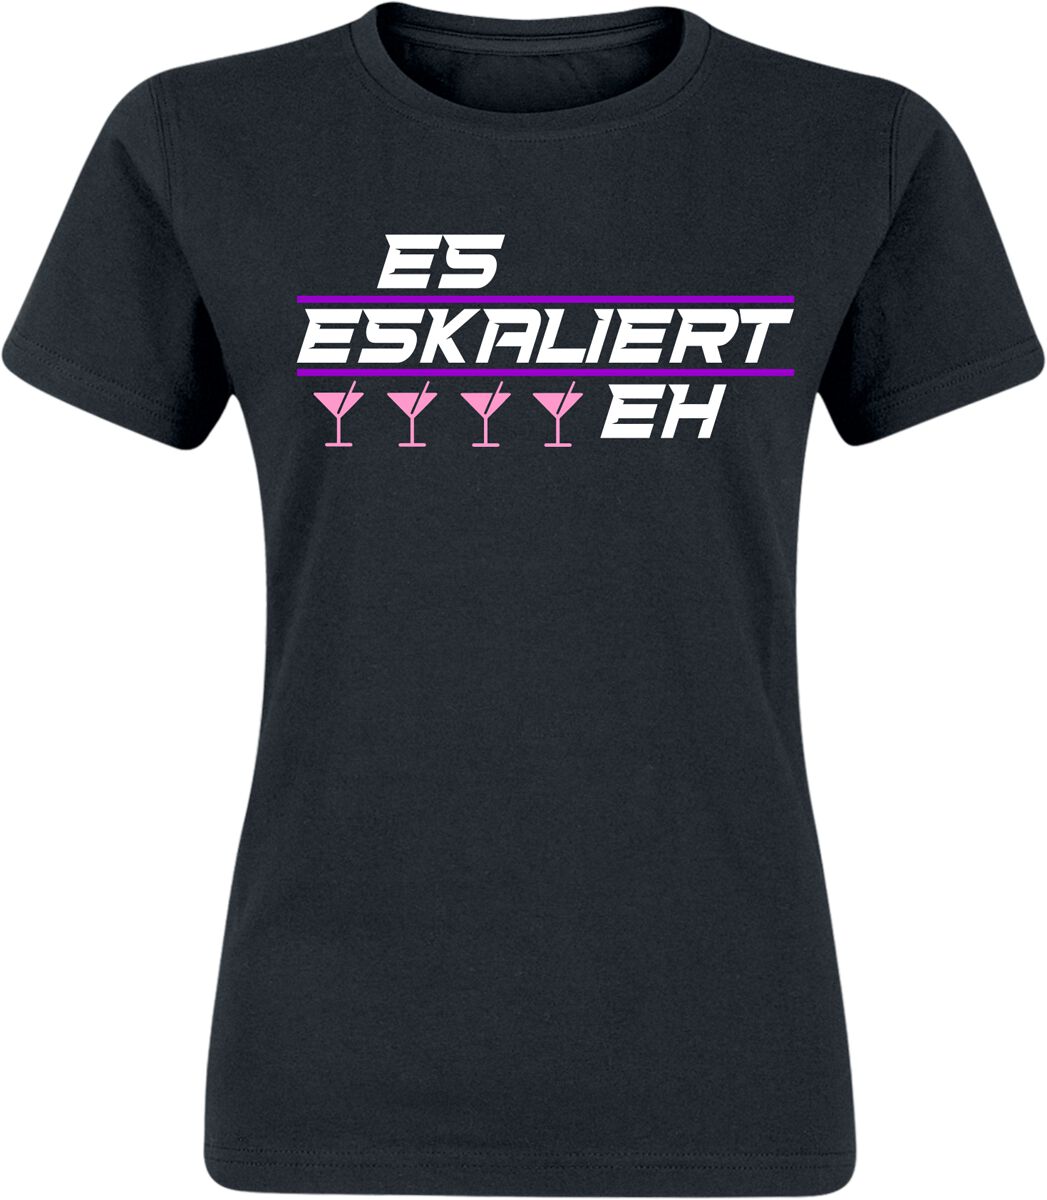 Alkohol & Party T-Shirt - Es eskaliert eh! - S bis XXL - für Damen - Größe S - schwarz